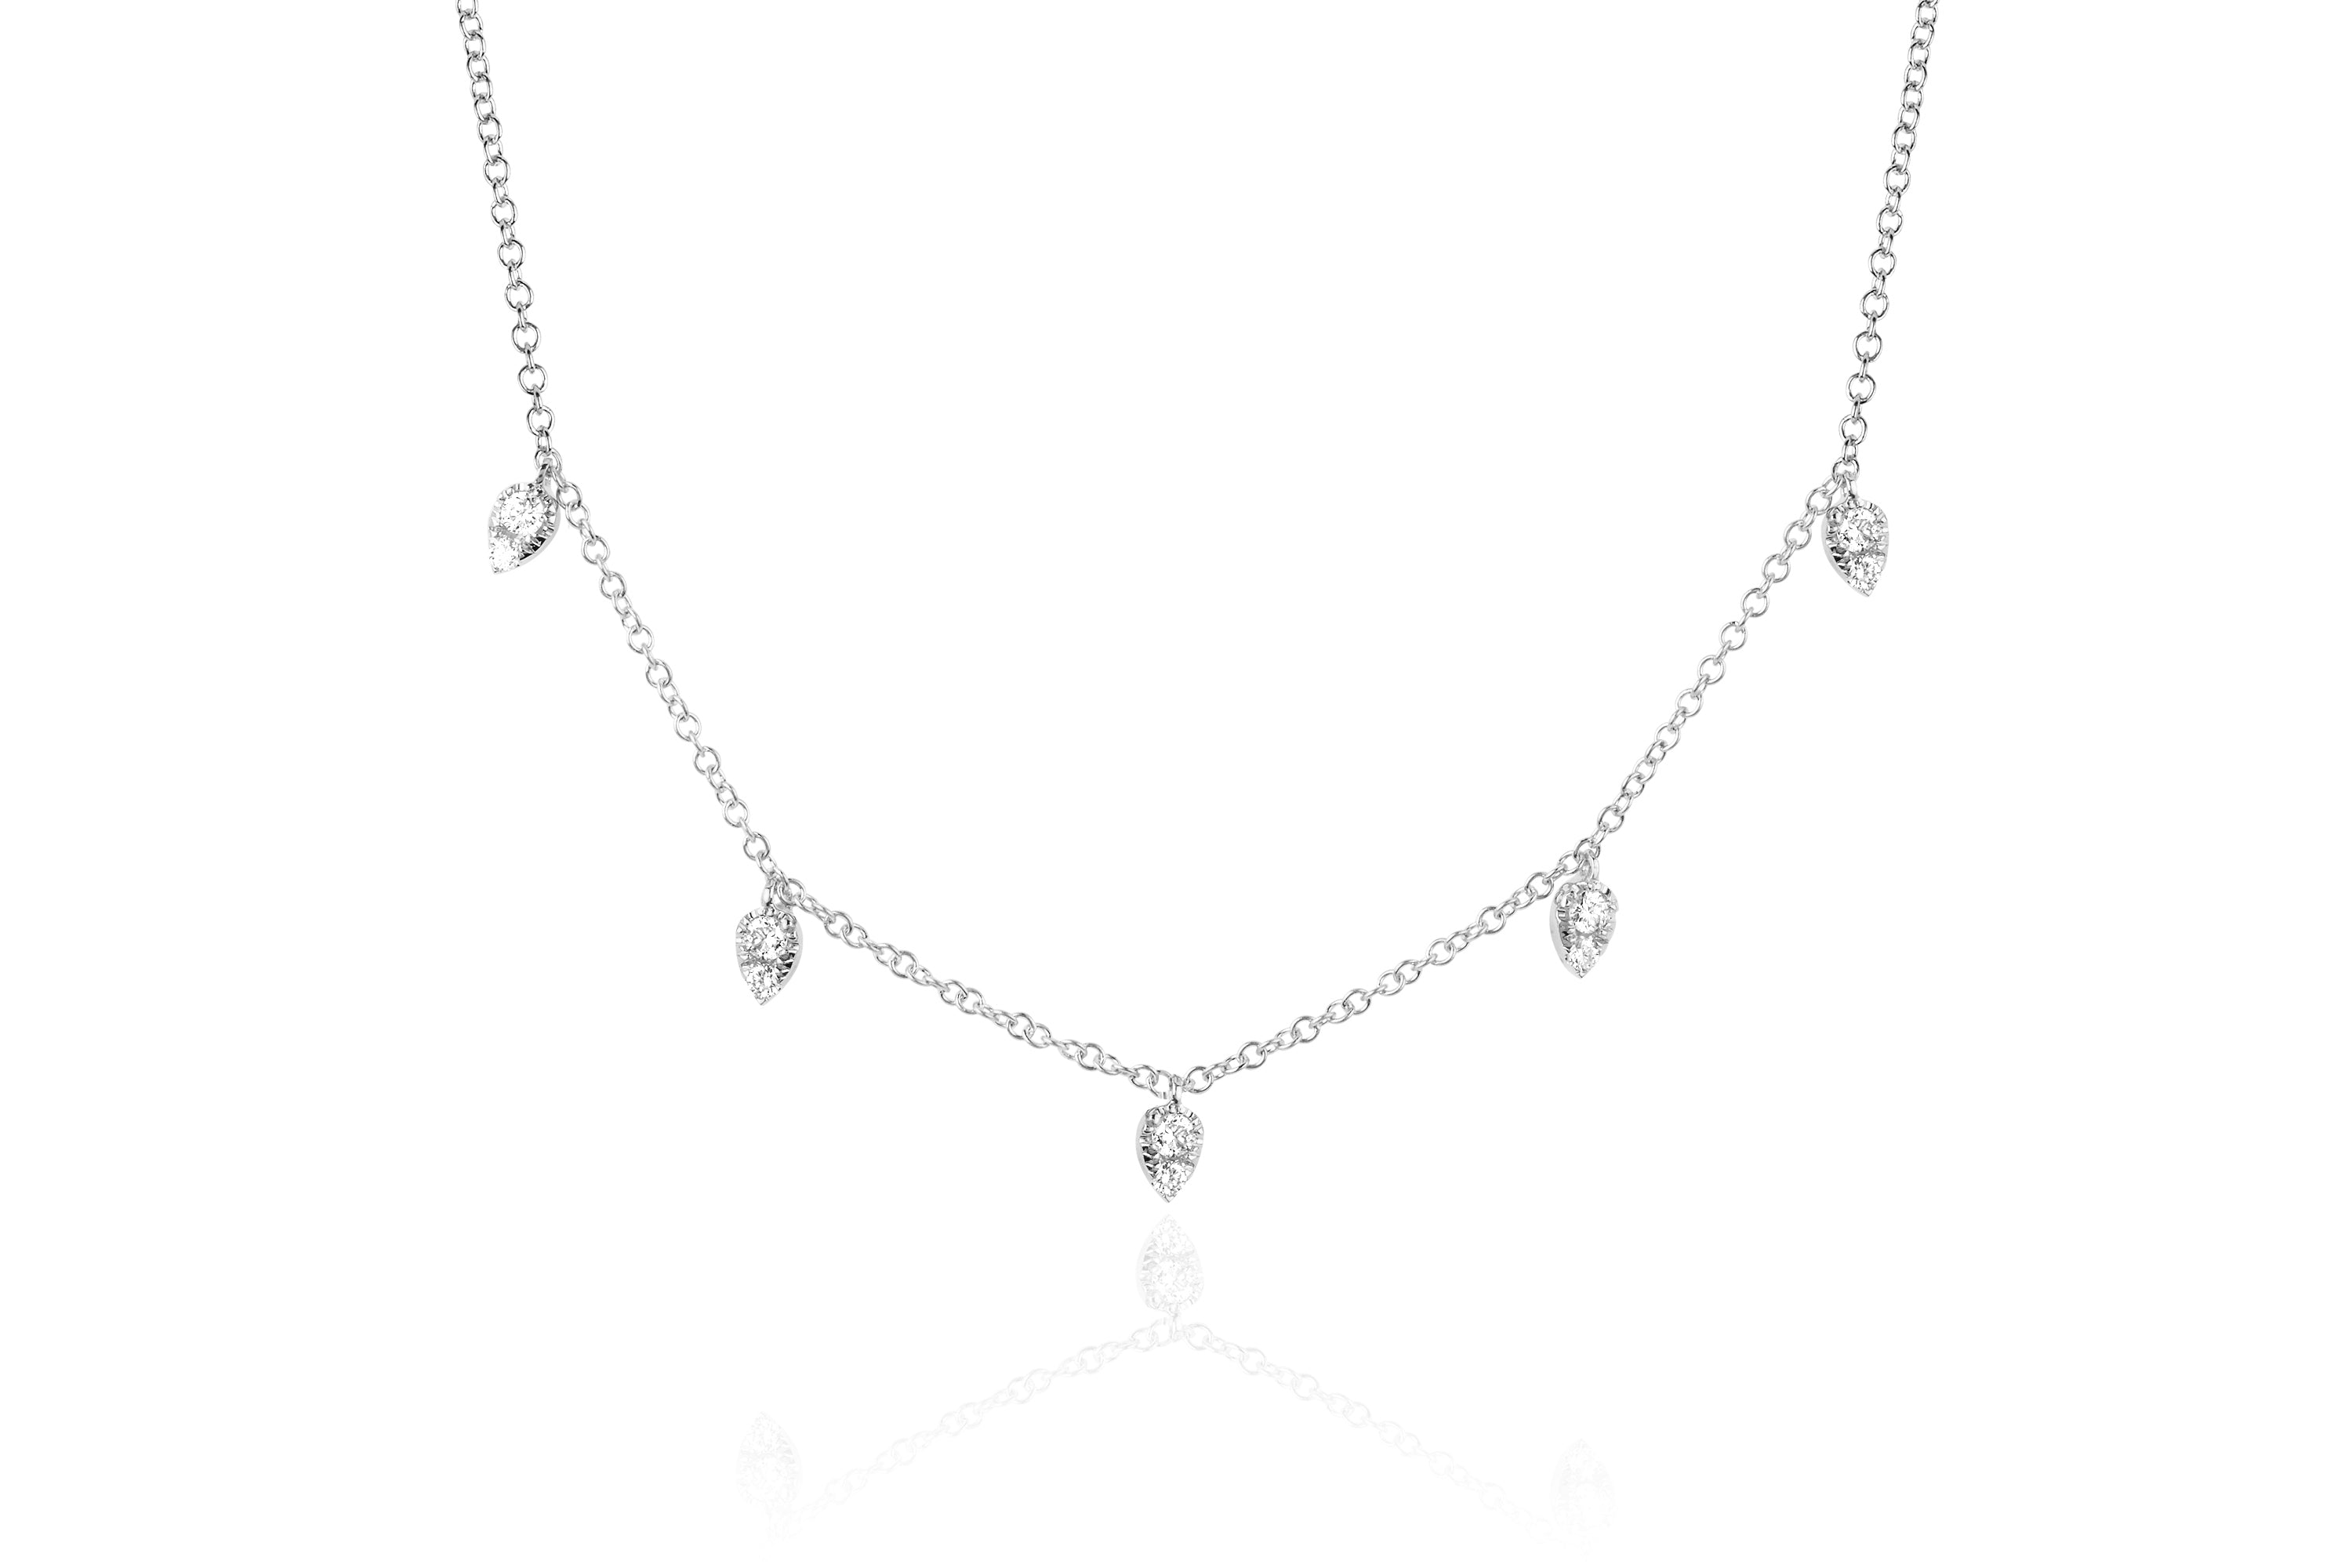 Diamond 5 Teardrop Choker Necklace in 14k white gold